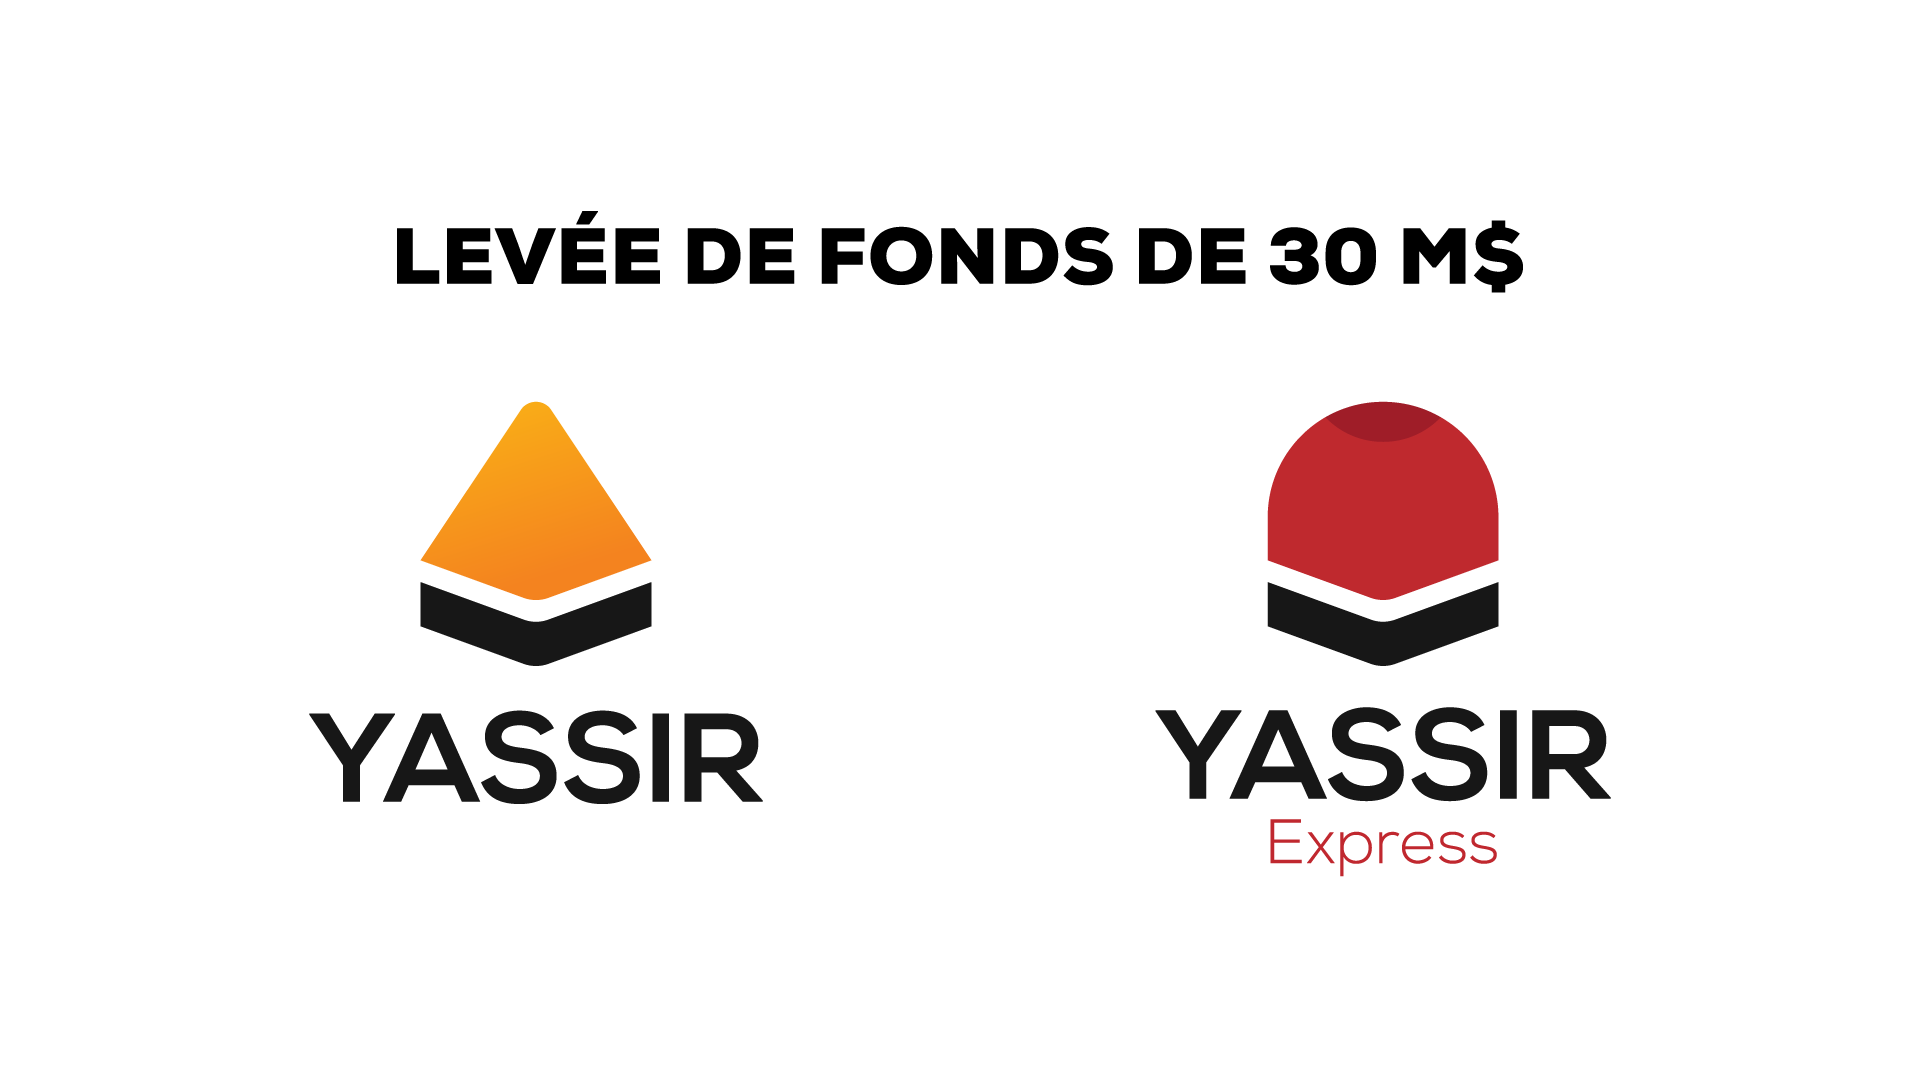 YASSIR réalise une levée de fonds en série A de 30 millions de dollars